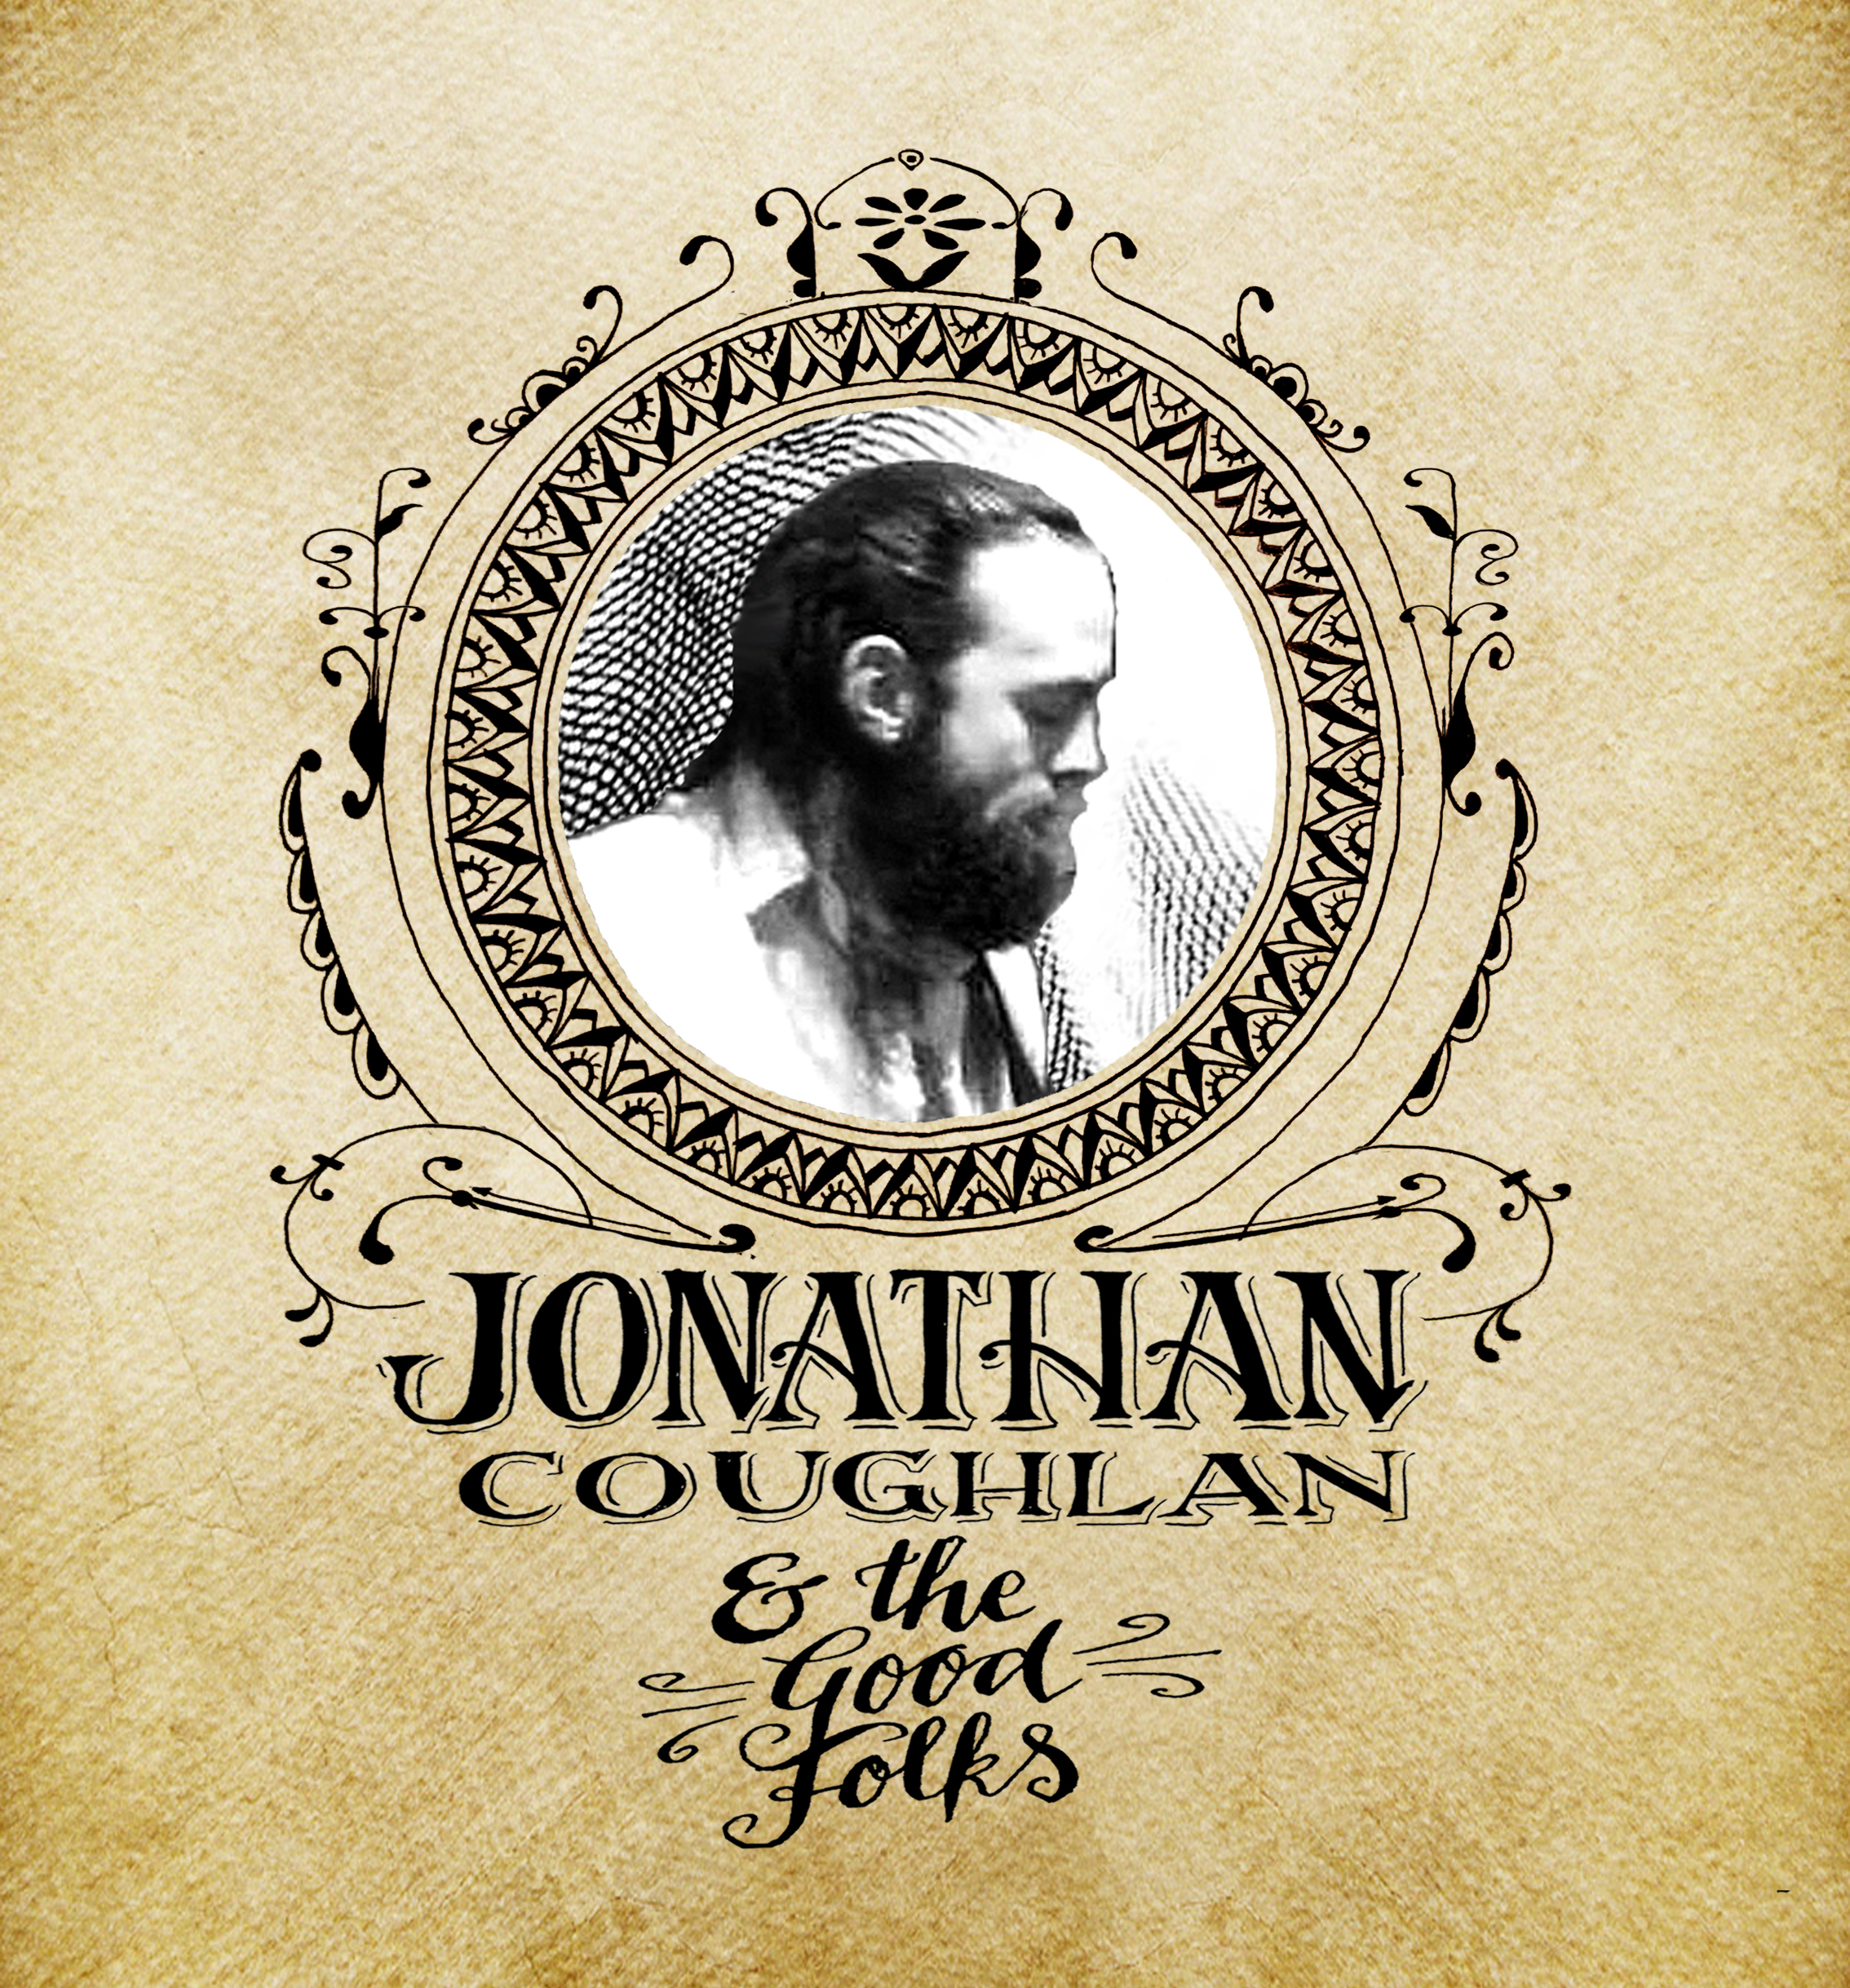 Jonathan Coughlan & The Good Folks